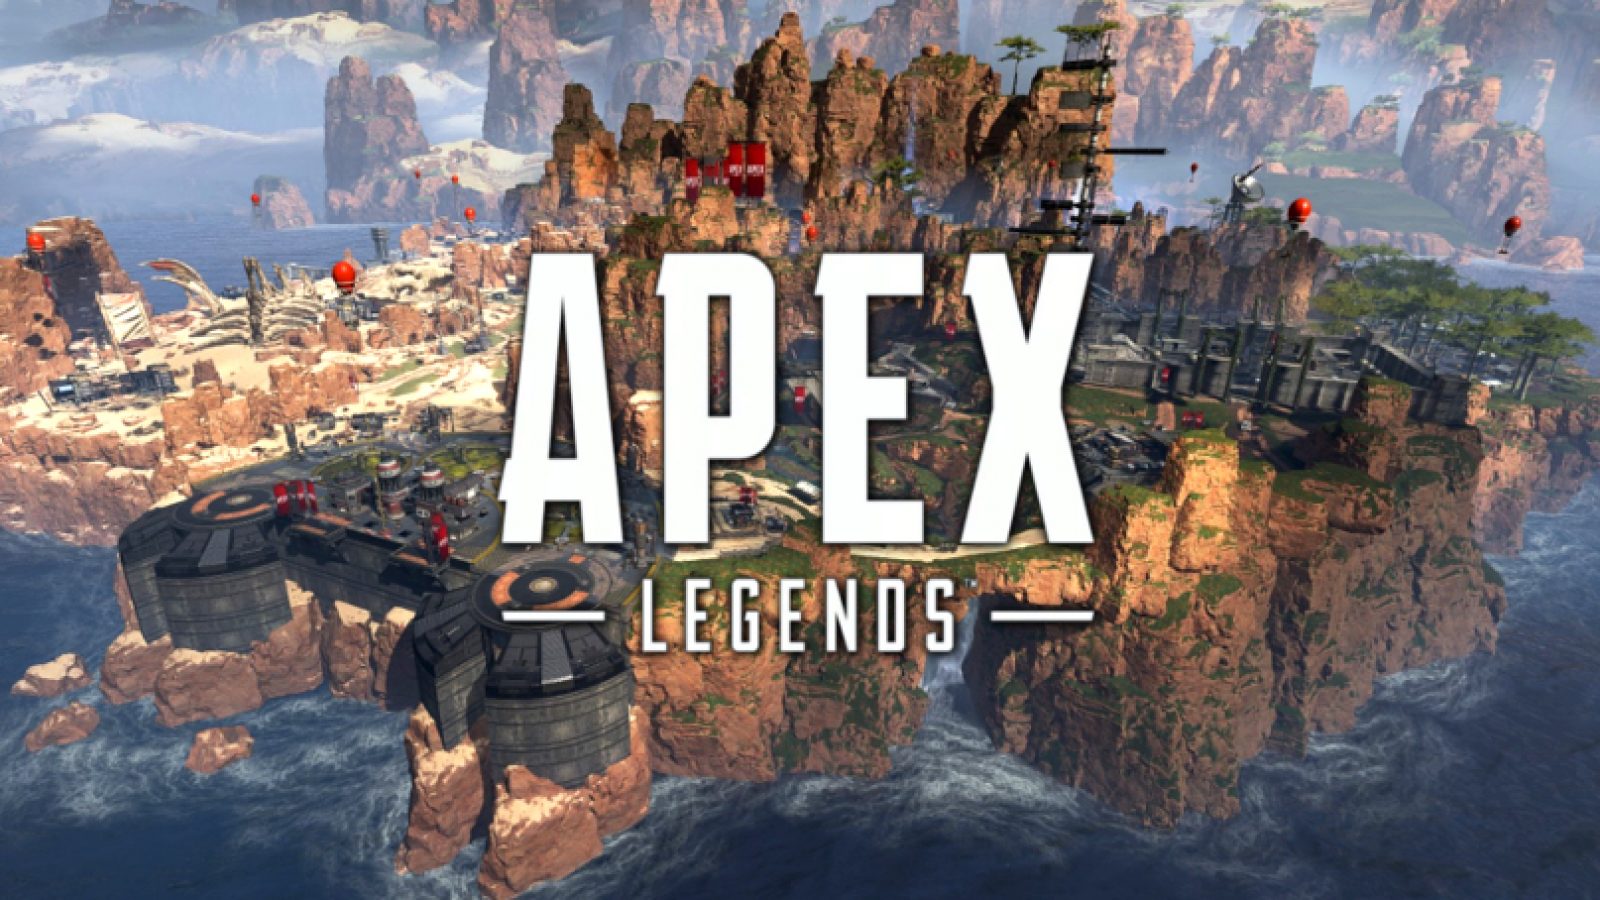 How To Hack Apex Legends Get Aimbot Plus Esp Latest Update 2019